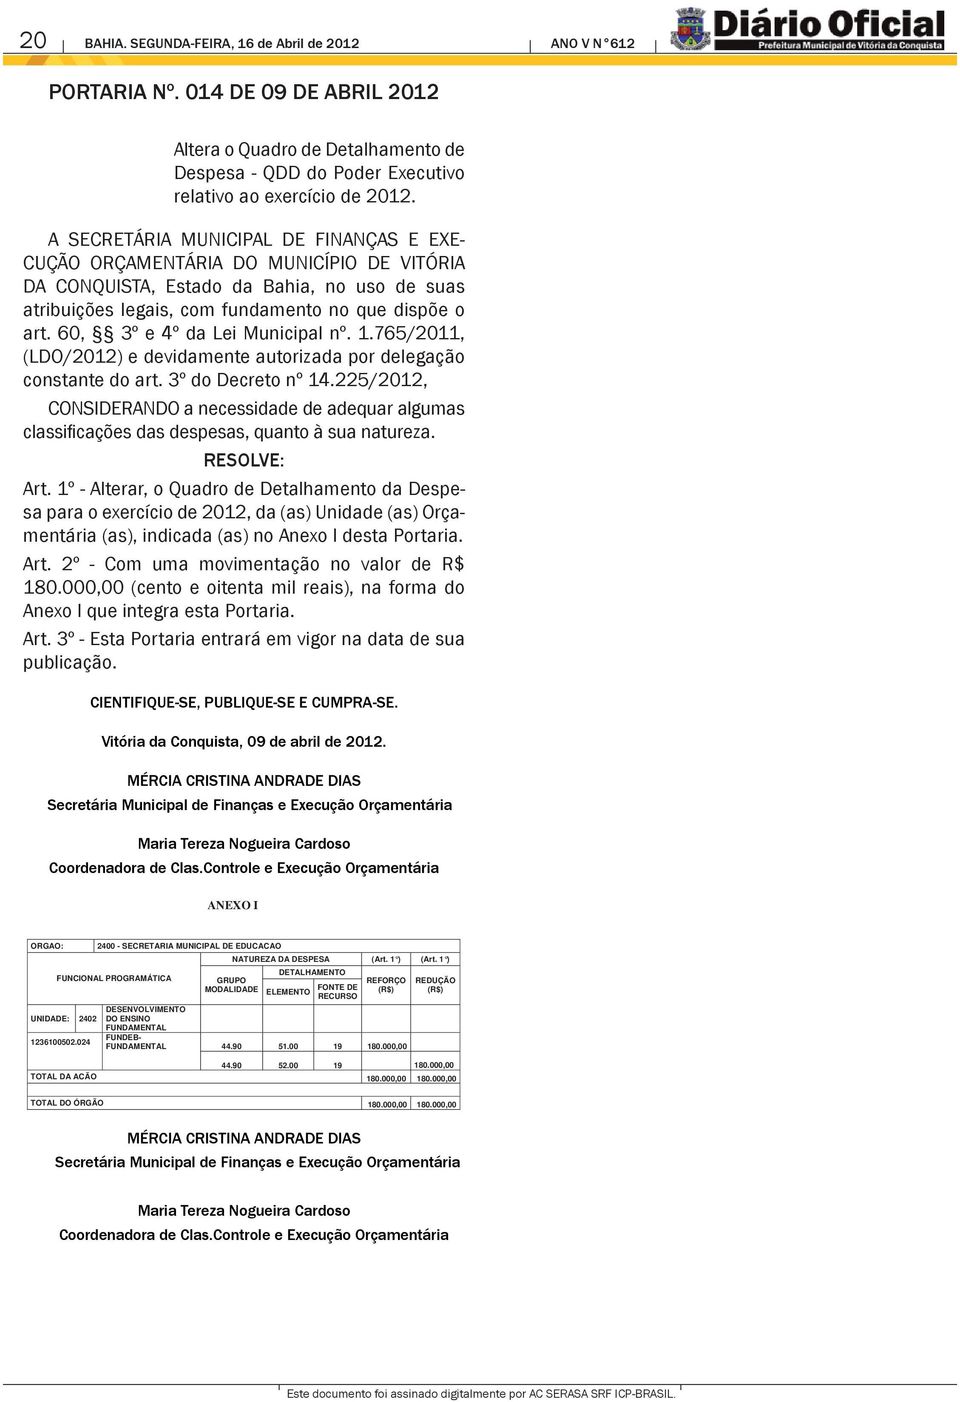 60, 3º e 4º da Lei Municipal nº. 1.765/2011, (LDO/2012) e devidamente autorizada por delegação constante do art. 3º do Decreto nº 14.